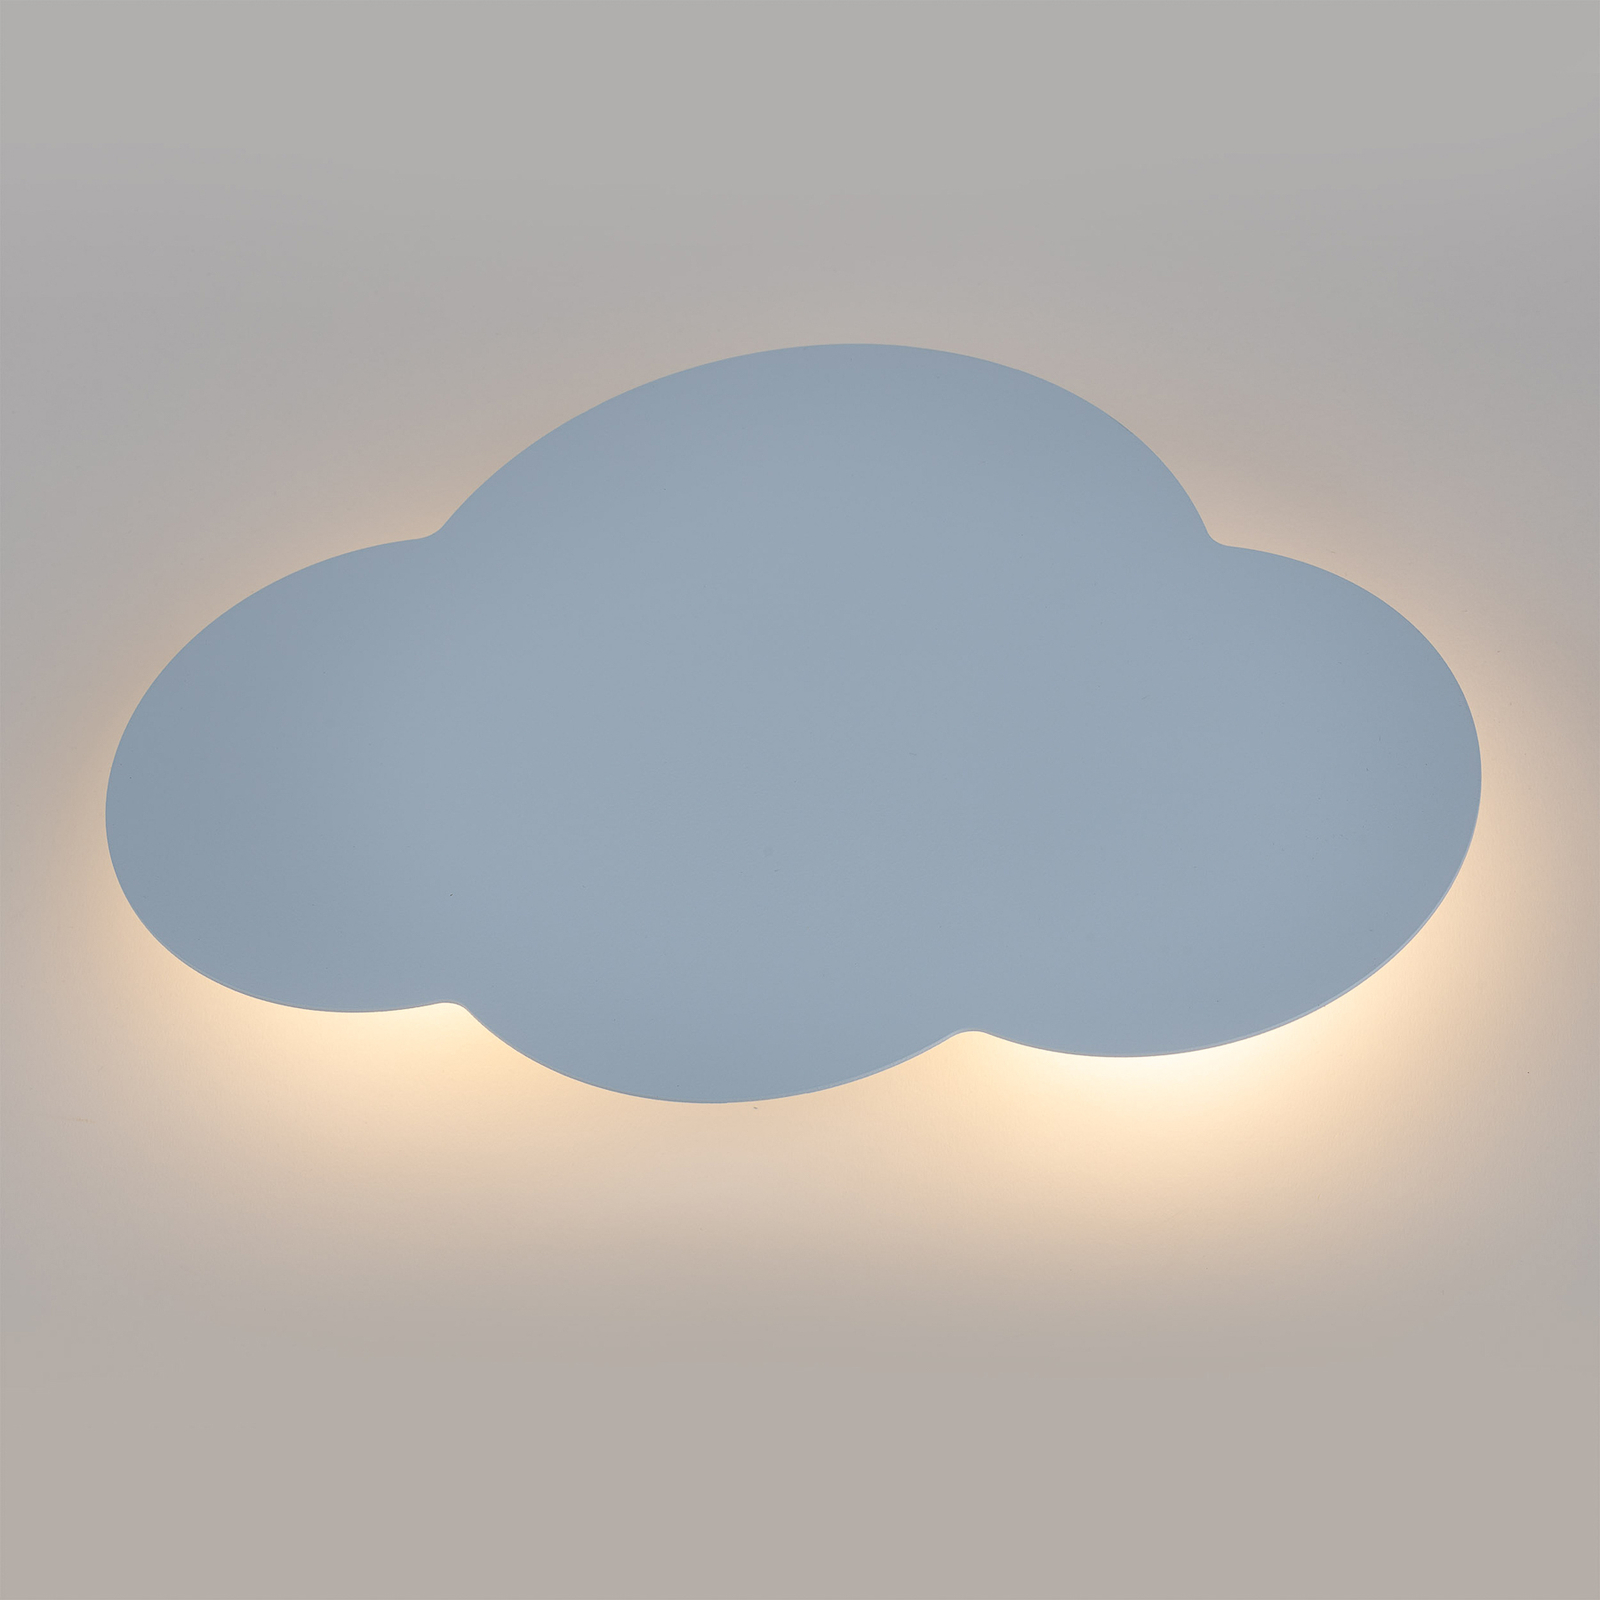 Nástenné svietidlo Cloud, modrá farba, oceľ, nepriame svetlo, 38 x 27 cm